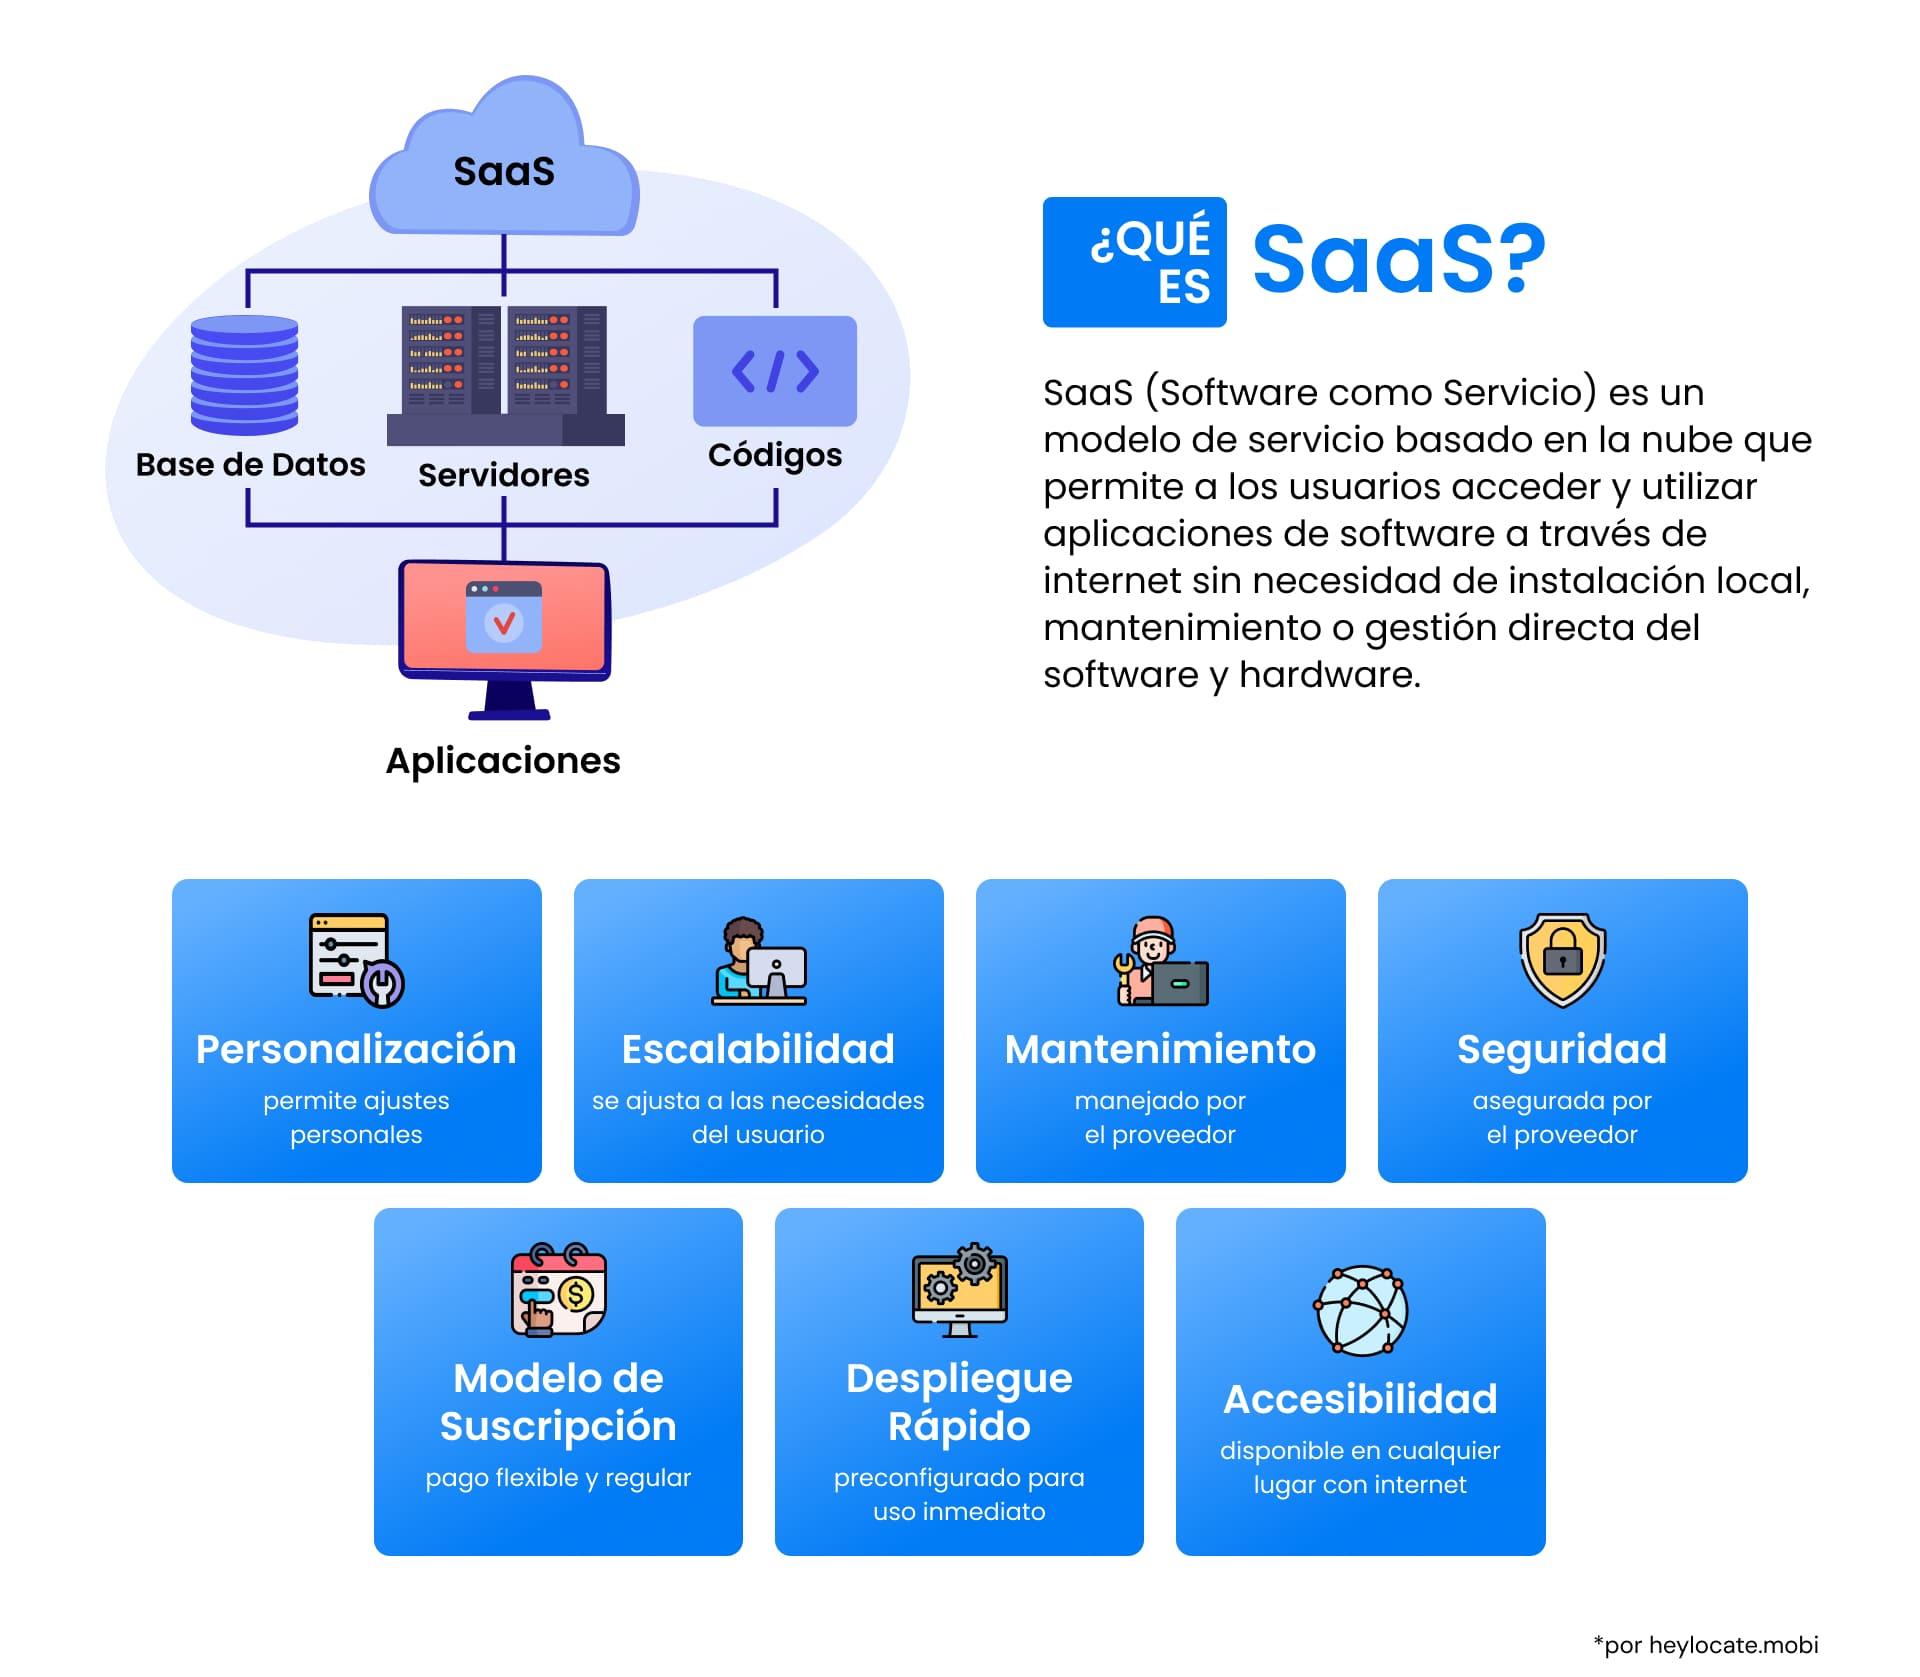 Infografía que explica el modelo SaaS, que presenta un símbolo central en la nube con componentes como base de datos, servidores y códigos conectados a varias aplicaciones.